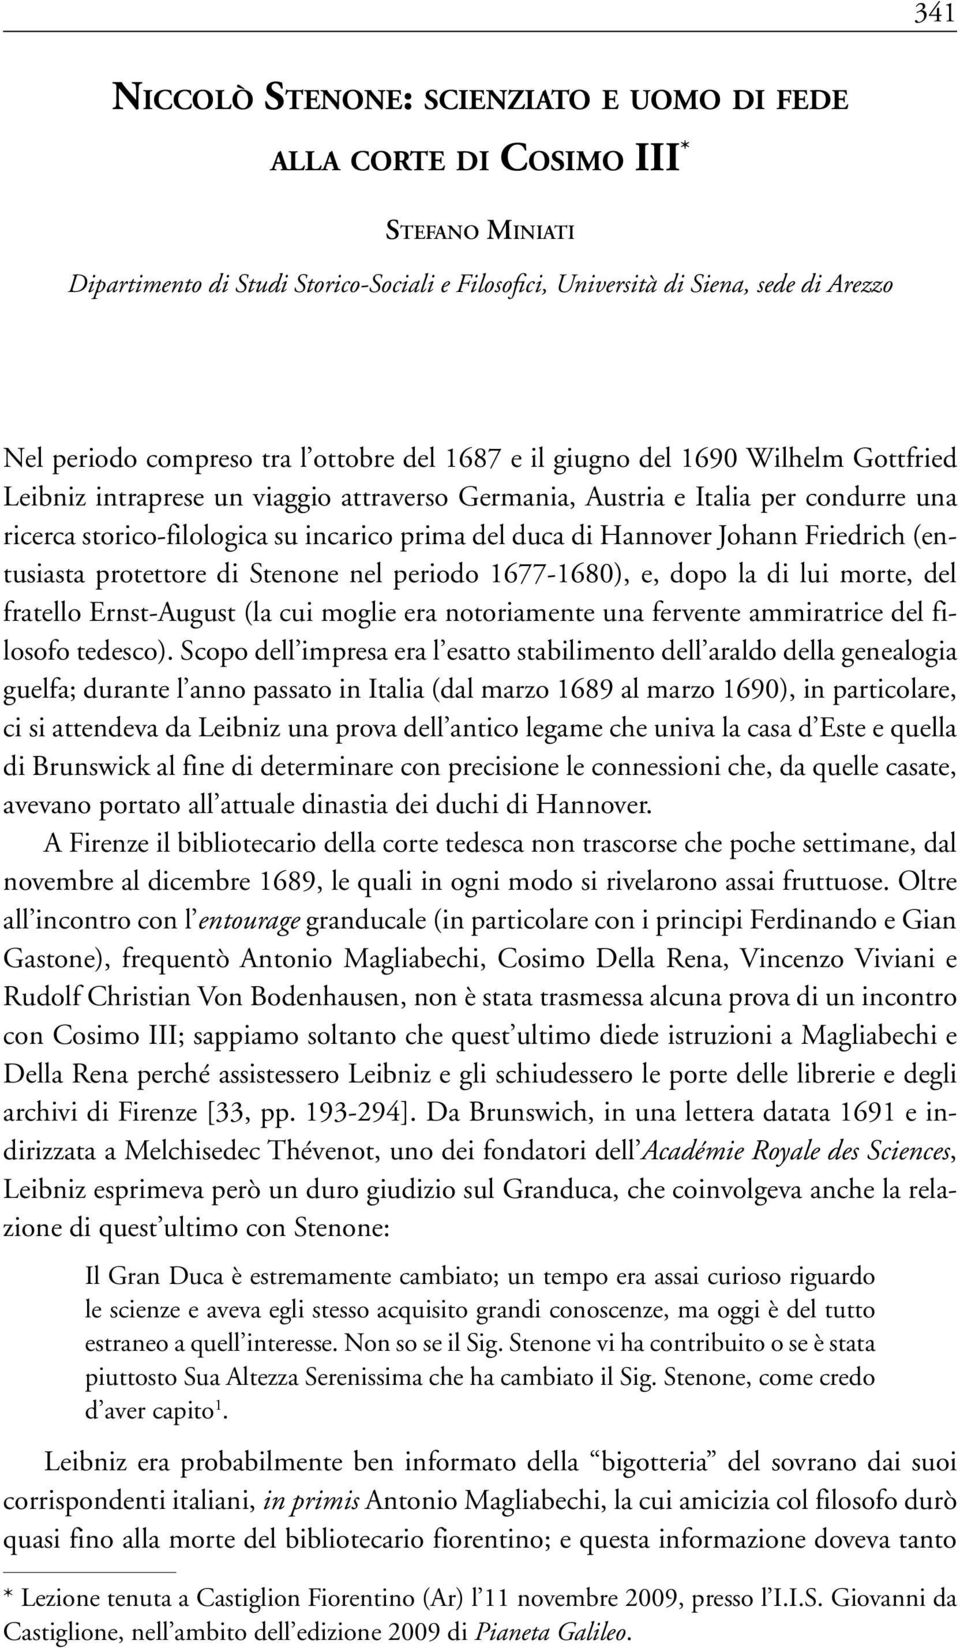 storico-filologica su incarico prima del duca di Hannover Johann Friedrich (entusiasta protettore di Stenone nel periodo 1677-1680), e, dopo la di lui morte, del fratello Ernst-August (la cui moglie